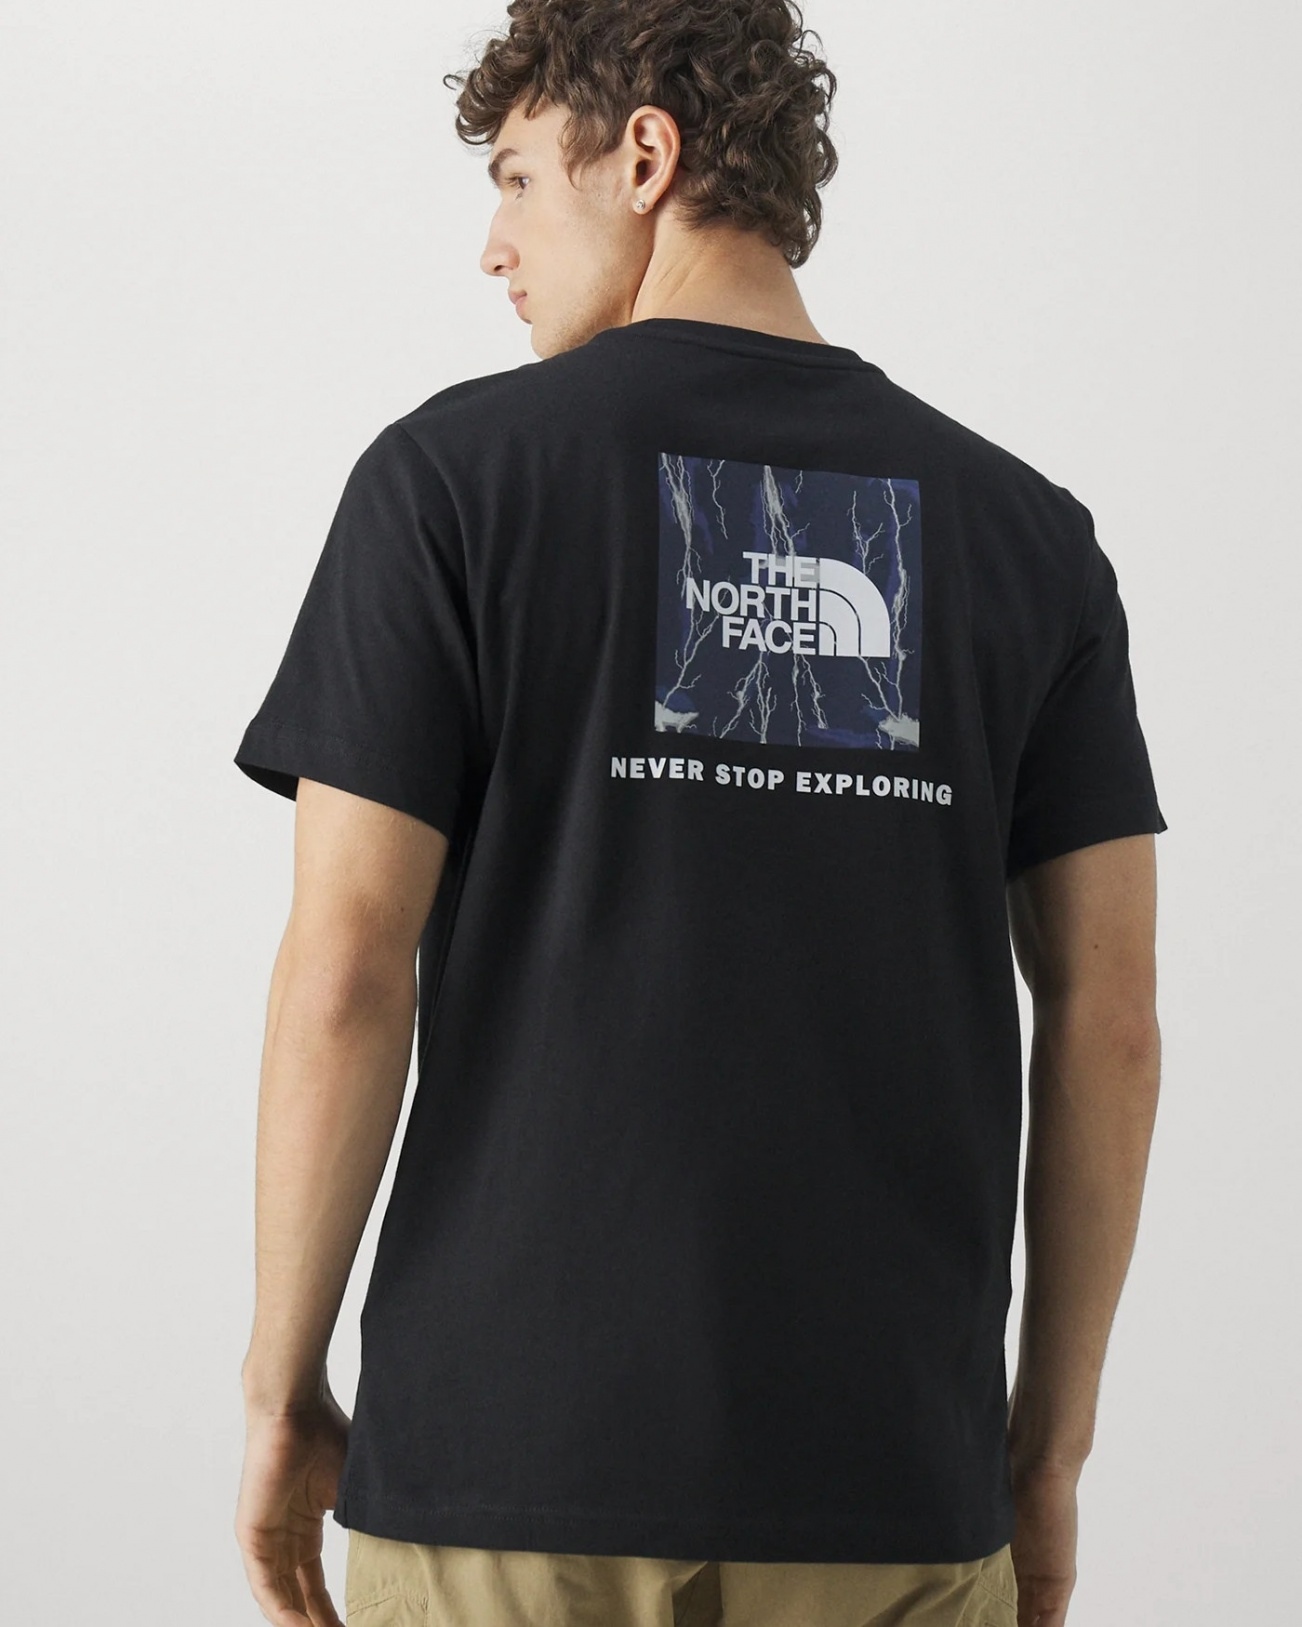  T-Shirt Maglia maglietta UOMO The North Face Nero Blue REDBOX Tee Cotone